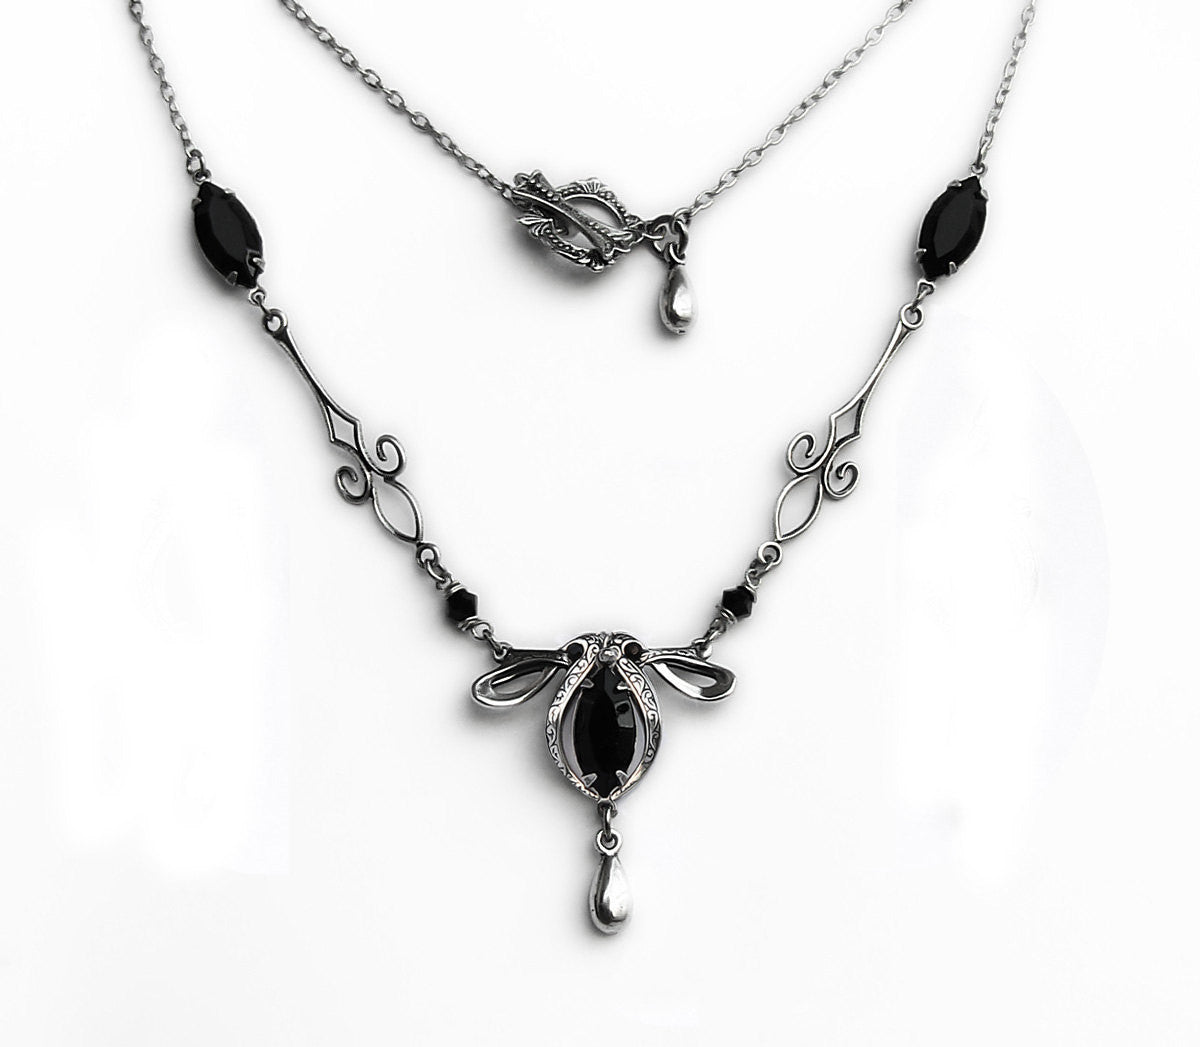 Silver Necklace with Black Swarovski Crystal - Aranwen's Jewelry
 - 1